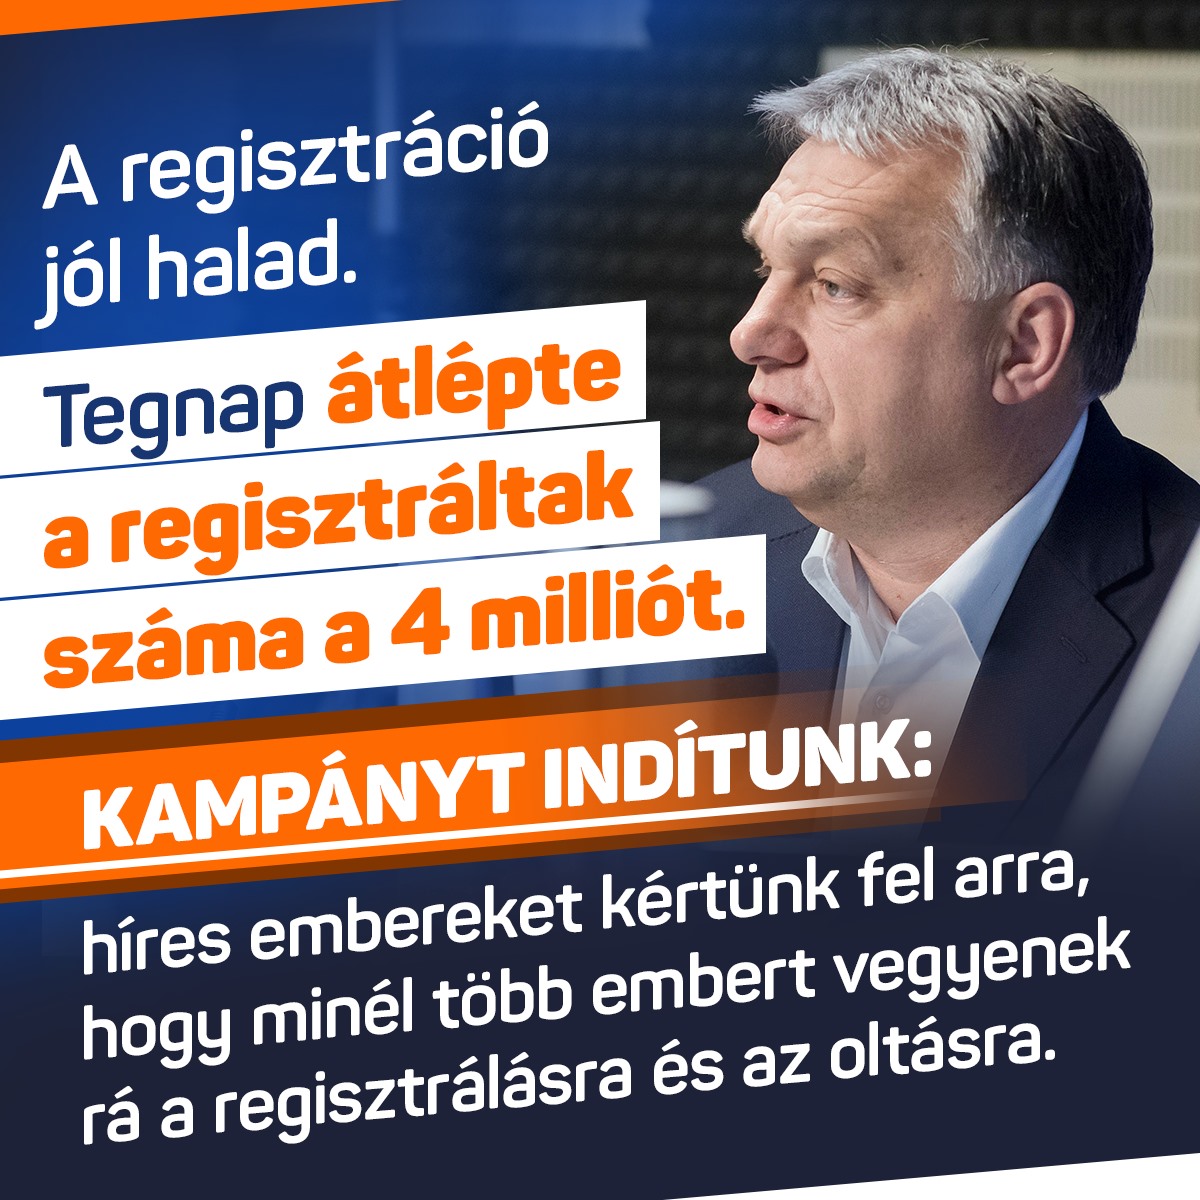 Orbán Viktor – A regisztráció jól halad. Tegnap átlépte a regisztráltak száma a 4 milliót. Kampányt indítunk: híres embereket kértünk fel arra, hogy minél több embert vegyenek rá a regisztrálásra és az oltásra.